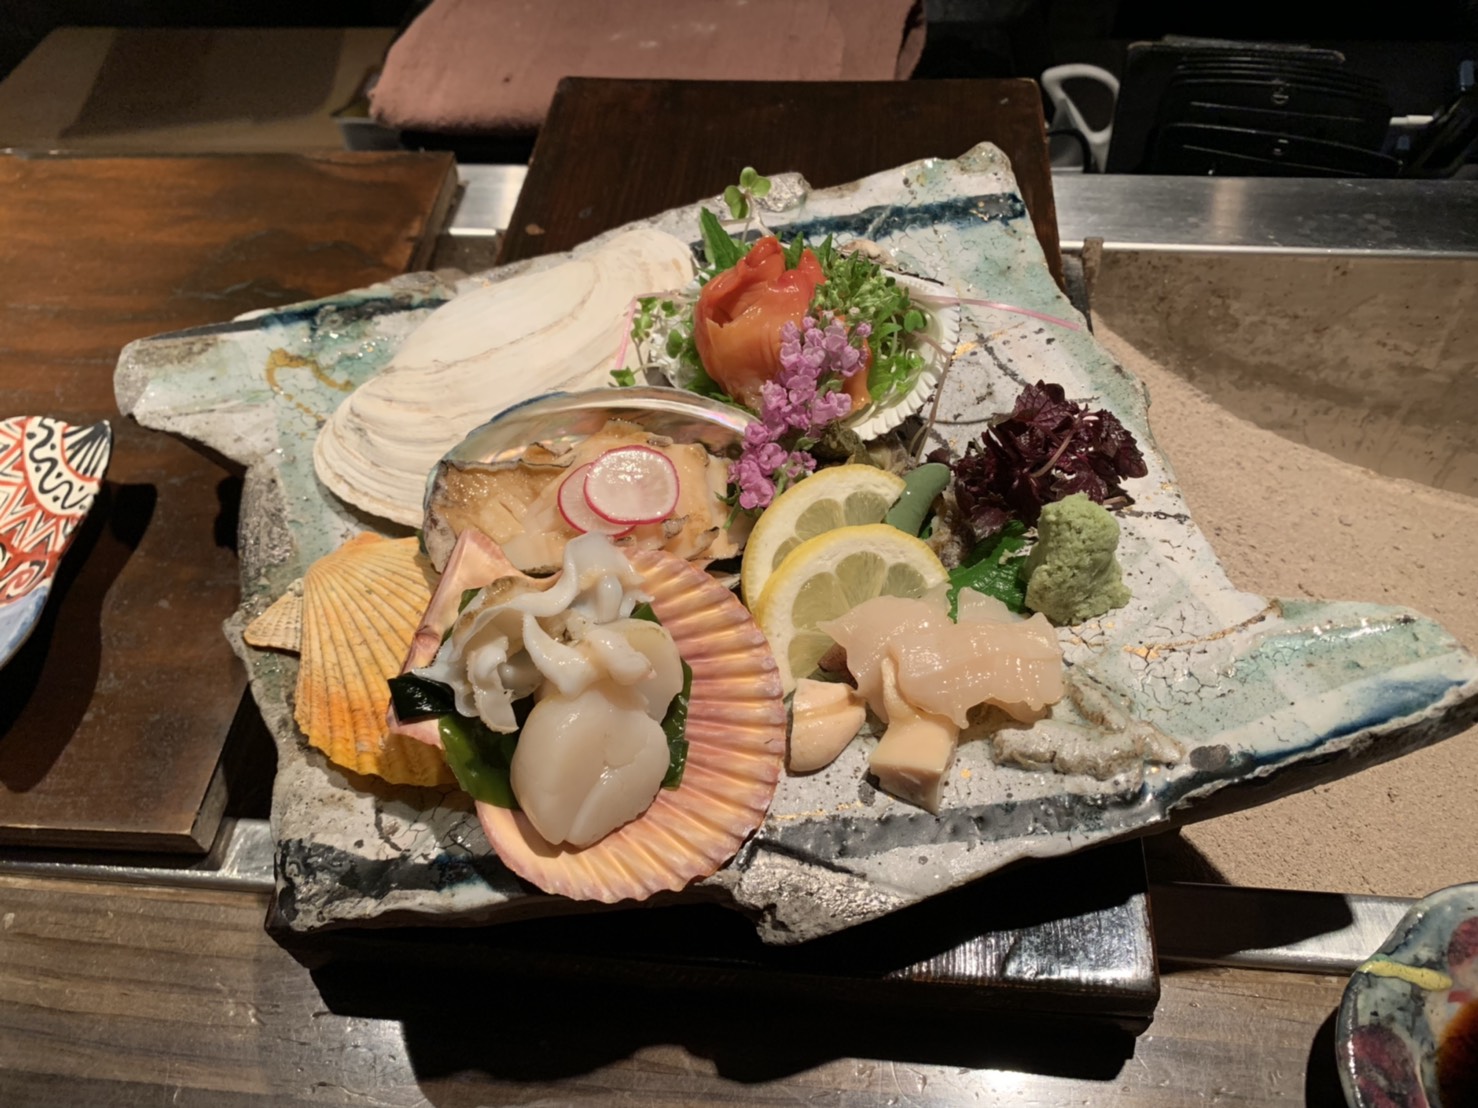 先日、大阪にある、地下鉄「心斎橋」駅から徒歩5分程の、“貝料理”専門店「ゑぽっく」さんを訪ねました！貝料理専門のお店自体、なかなか珍しいですが、選び抜かれた食材と、コース料理ならではの食のバランス、演出は、ここ「ゑぽっく」さんでしか味わえない特別感があり、終始大満喫でした！●季節のお野菜(茄子とトマト)と貝(貝柱)の冷菜お口の中に広がる冷んやりと優しい味付け、貝柱の甘さからスタートです。●貝だけでとった出汁のスープなんともホッとするコハク酸の旨味(栄養学生だからか、旨味成分が頭によぎります(^^)♪)が詰まった上品なスープ●貝のお造り盛り合わせ選び抜かれた食材で、貝のお造り。塩と醤油でいただきました。●前菜7種盛り合わせ生牡蠣のポン酢和え、イタヤ貝のポテトサラダ、つぶ貝の自家製チャンジャ、ばい貝と大根の煮物、、、などなど えぽっくさんならではの貝の前菜創作料理は、盛り付けも含め大満喫でした！●帆立deカツサンドなんとも可愛らしい帆立のカツサンド、遊び心が垣間見え楽しく、その味も別格でした！次々出てくる貝のお料理に心が踊ります♪●焼き物 〜牡蠣〜昆布の上に牡蠣をのせ、目の前で、炭火で焼いていただきました！待ち遠しく見つめながら、、、粒が大きくプリプリで輝かしい牡蠣は、さっぱりとした味でとても美味しかったです。昆布の上に零れ落ちた汁までいただきました！●焼き物 〜貝焼き 北寄貝 黒豚アーリオオーリオ〜北寄貝(コハク酸)と、ベーコン(イノシン酸)と、椎茸(グアニル酸酸)で、旨味の相乗効果で、旨味が何倍にも膨れ上がり、仕上げにガーリックオイル！！！貝にはこんなお料理もあったのかと、あっと驚く美味しさでした！●焼き物 〜あわび〜お造りではコリコリとした生の鮑をいただきましたが、焼くと食感が一変し、とっても柔らかかったです！鮑の肝で作られたソースでいただきましたが！これがまたなんとも言えない美味しさで、旨味が濃縮されていました。最高です！●浅利の塩ラーメンコースの〆に、白醤油で仕上げた浅利の塩ラーメン！こちら、えぽっくさんではランチも行なっており、ランチで人気の浅利の塩ラーメンです！！●デザートそして、“獺祭”もいただきました！貝料理に日本酒は良く合いますね！料理長が織りなすコース料理は、一つ一つのお料理だけではなく、お料理の流れを楽しむことがでしました。美味しいものを食べるって本当に幸せだなと思います♪♪♪また、美味しいお店を知るってとても嬉しいですね♪♪♪至福の一時でした～～『ゑぽっく』アクセス：地下鉄見御堂筋線心斎橋駅6番出口　徒歩5分ホームページ：http://www.qraud.com/brand-list/epoque/電話番号：06-6252-1540*:..｡o○☆*ﾟ¨ﾟﾟ･*:..｡o○☆*ﾟ¨ﾟﾟ･*:..｡o○☆･*:..｡o○☆*ﾟ¨ﾟﾟ･*:..｡o○☆*ﾟ¨ﾟﾟ･*:..｡o○住所：兵庫県芦屋市大原町9-1-806 株式会社然 （http://www.zenmarche.com/）http://fun-westjapan.com/【発行者】 fun実行委員会～栄養学生団体【fun】は、栄養士・管理栄養士養成コースの学生が社会や企業と コラボレーションしながら、社会で即戦力として通用する経験を積む場です。栄養士・管理栄養士を目指す大学生、専門学校生の就活にも有利です♪♪～･*:..｡o○☆*ﾟ¨ﾟﾟ･*:..｡o○☆*ﾟ¨ﾟﾟ･*:..｡o○☆･*:..｡o○☆*ﾟ¨ﾟﾟ･*:..｡o○☆*ﾟ¨ﾟﾟ･*:..｡